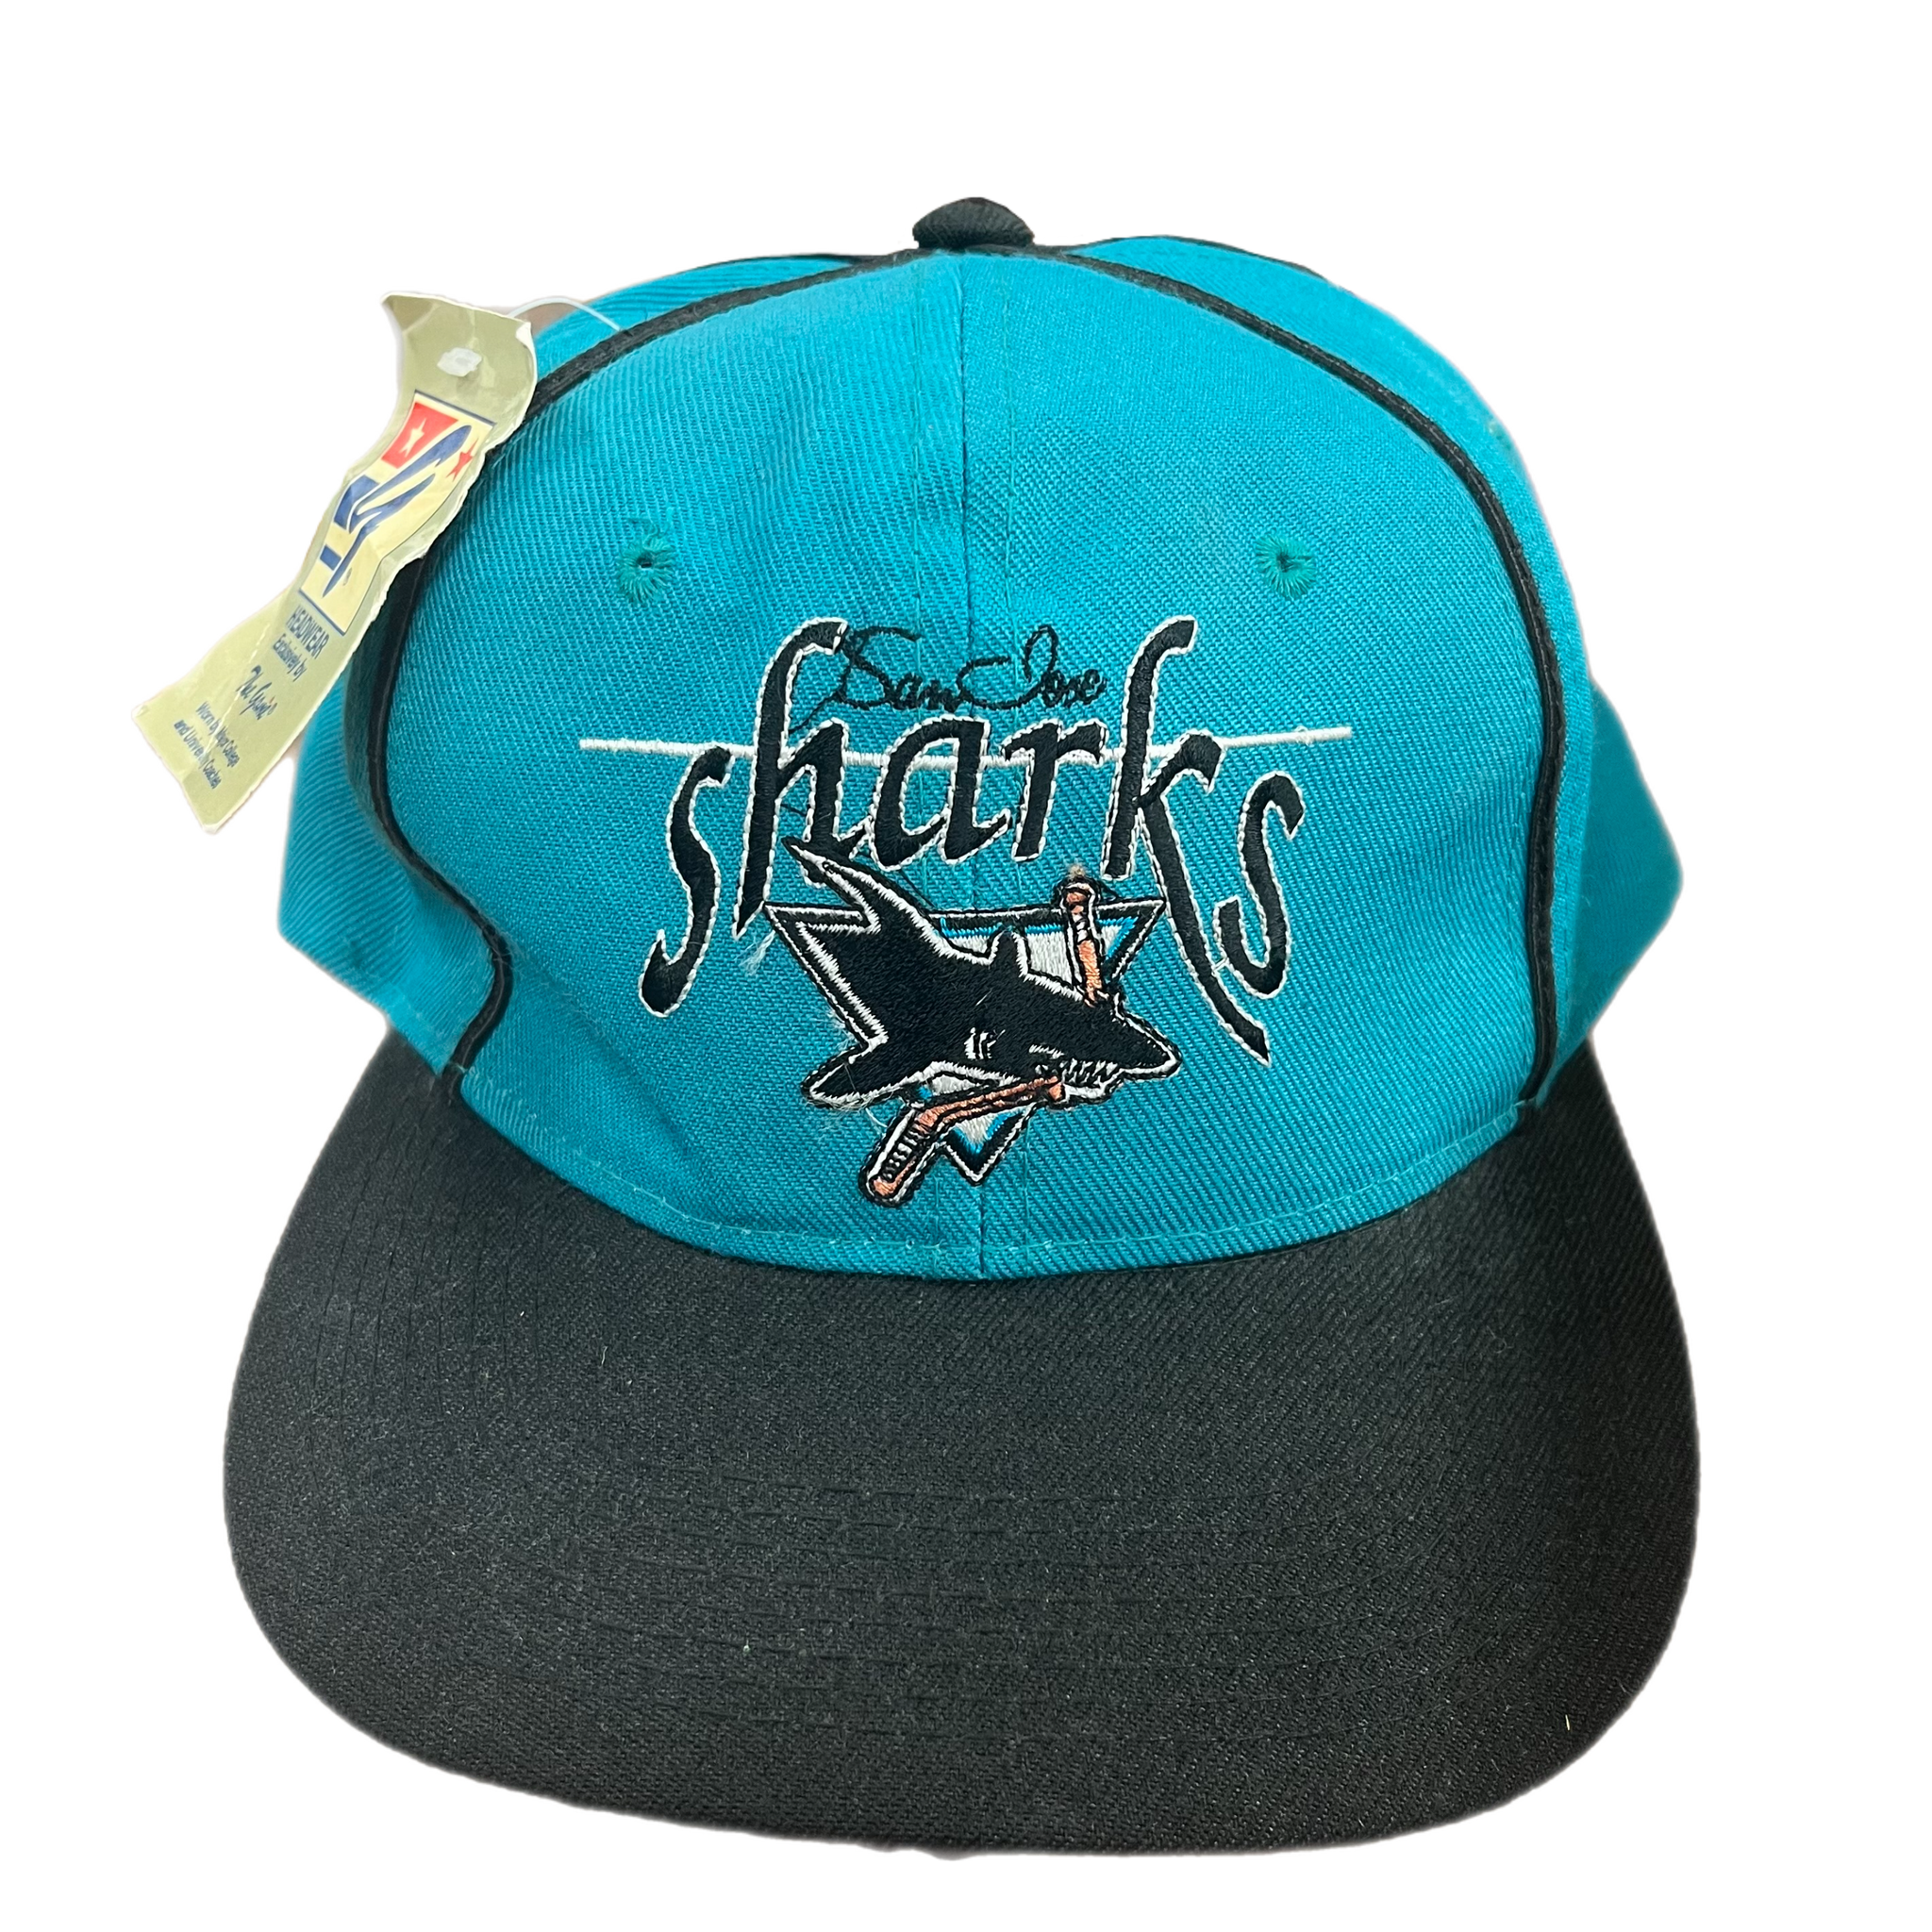 The Sharks Snapback Cap